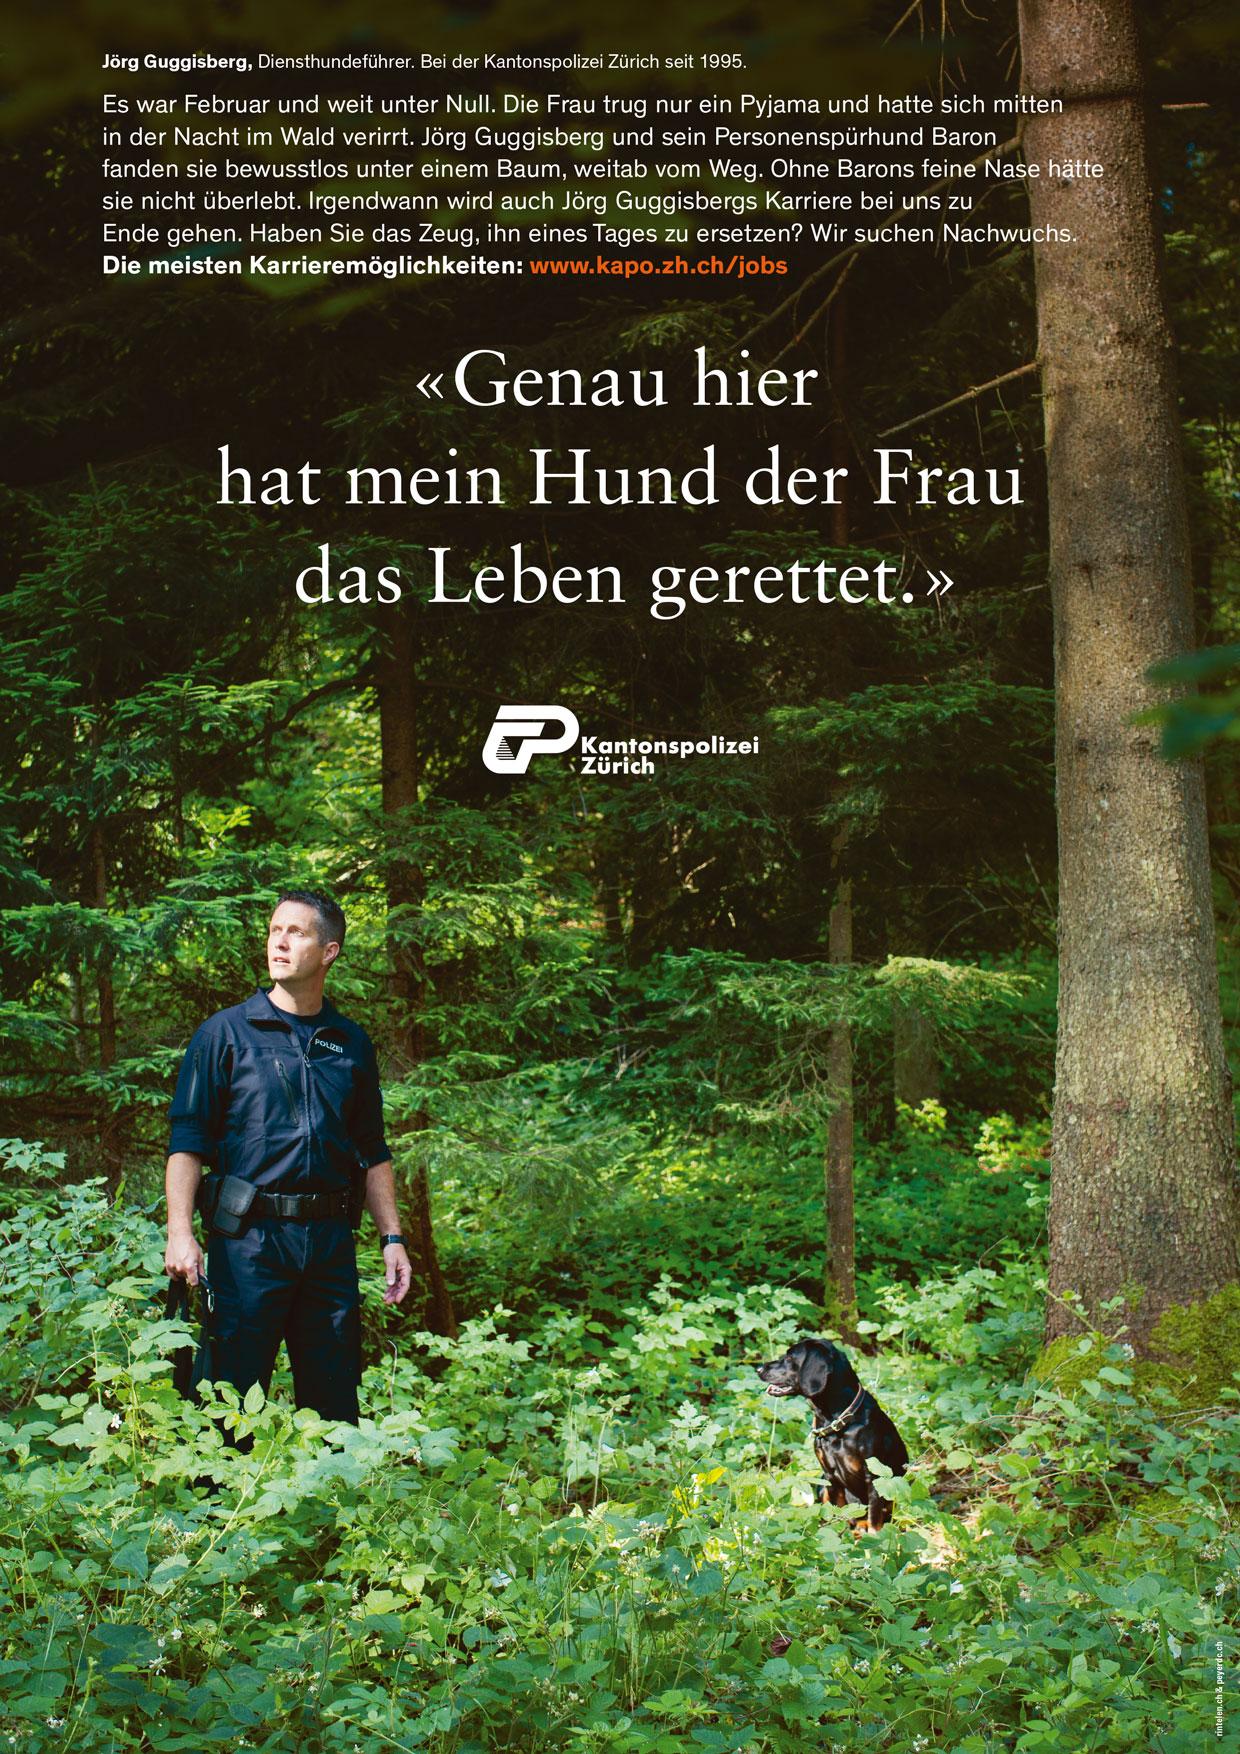 Jörg Guggisberg mit seinem Diensthund «Baron» im Wald